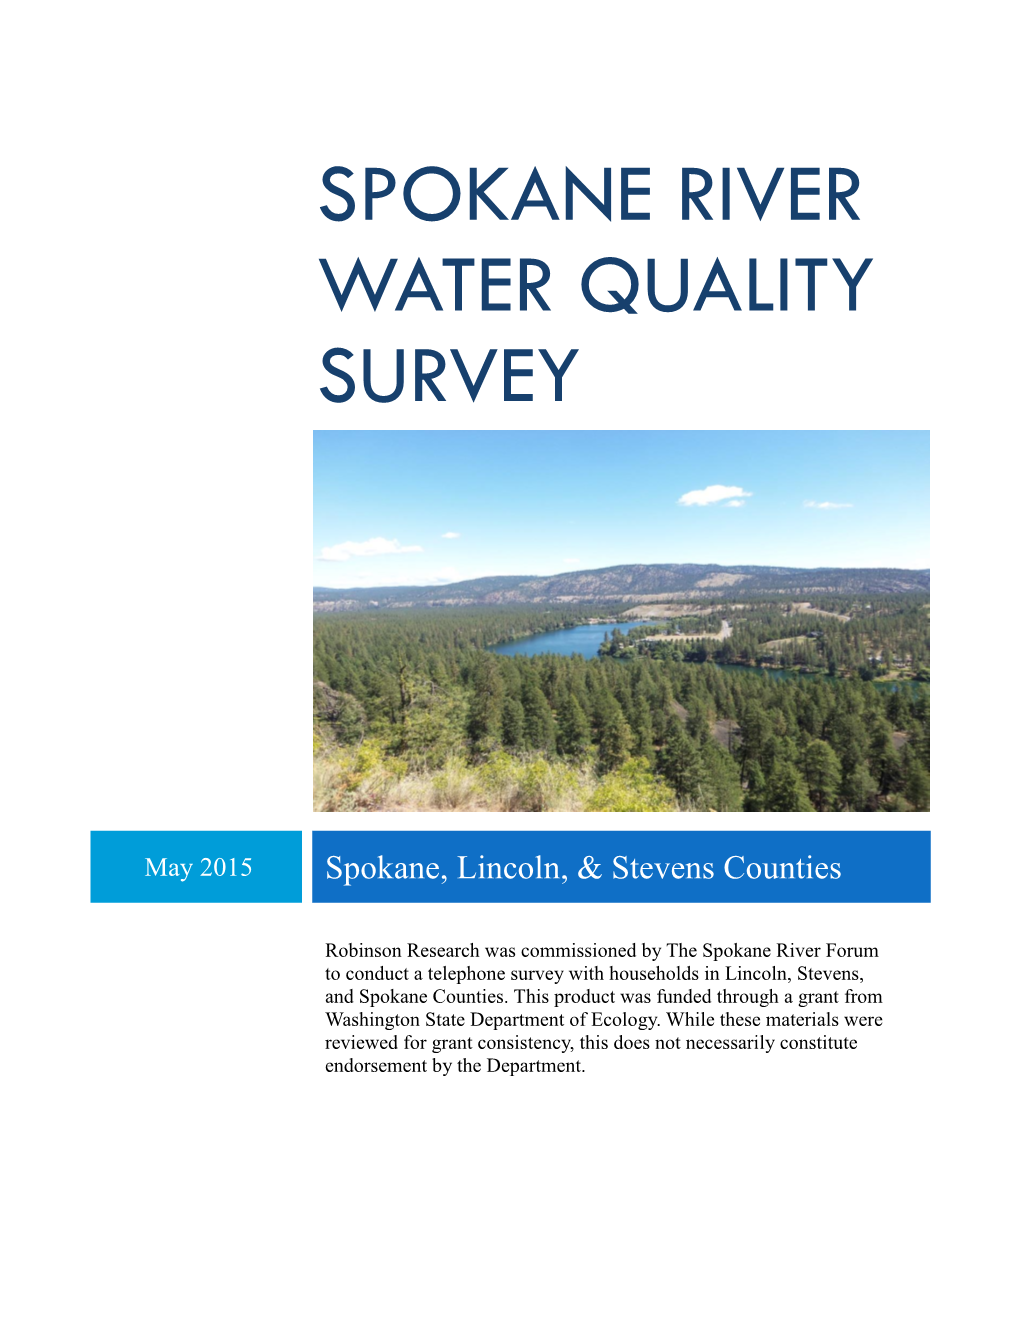 Spokane River Water Quality Survey